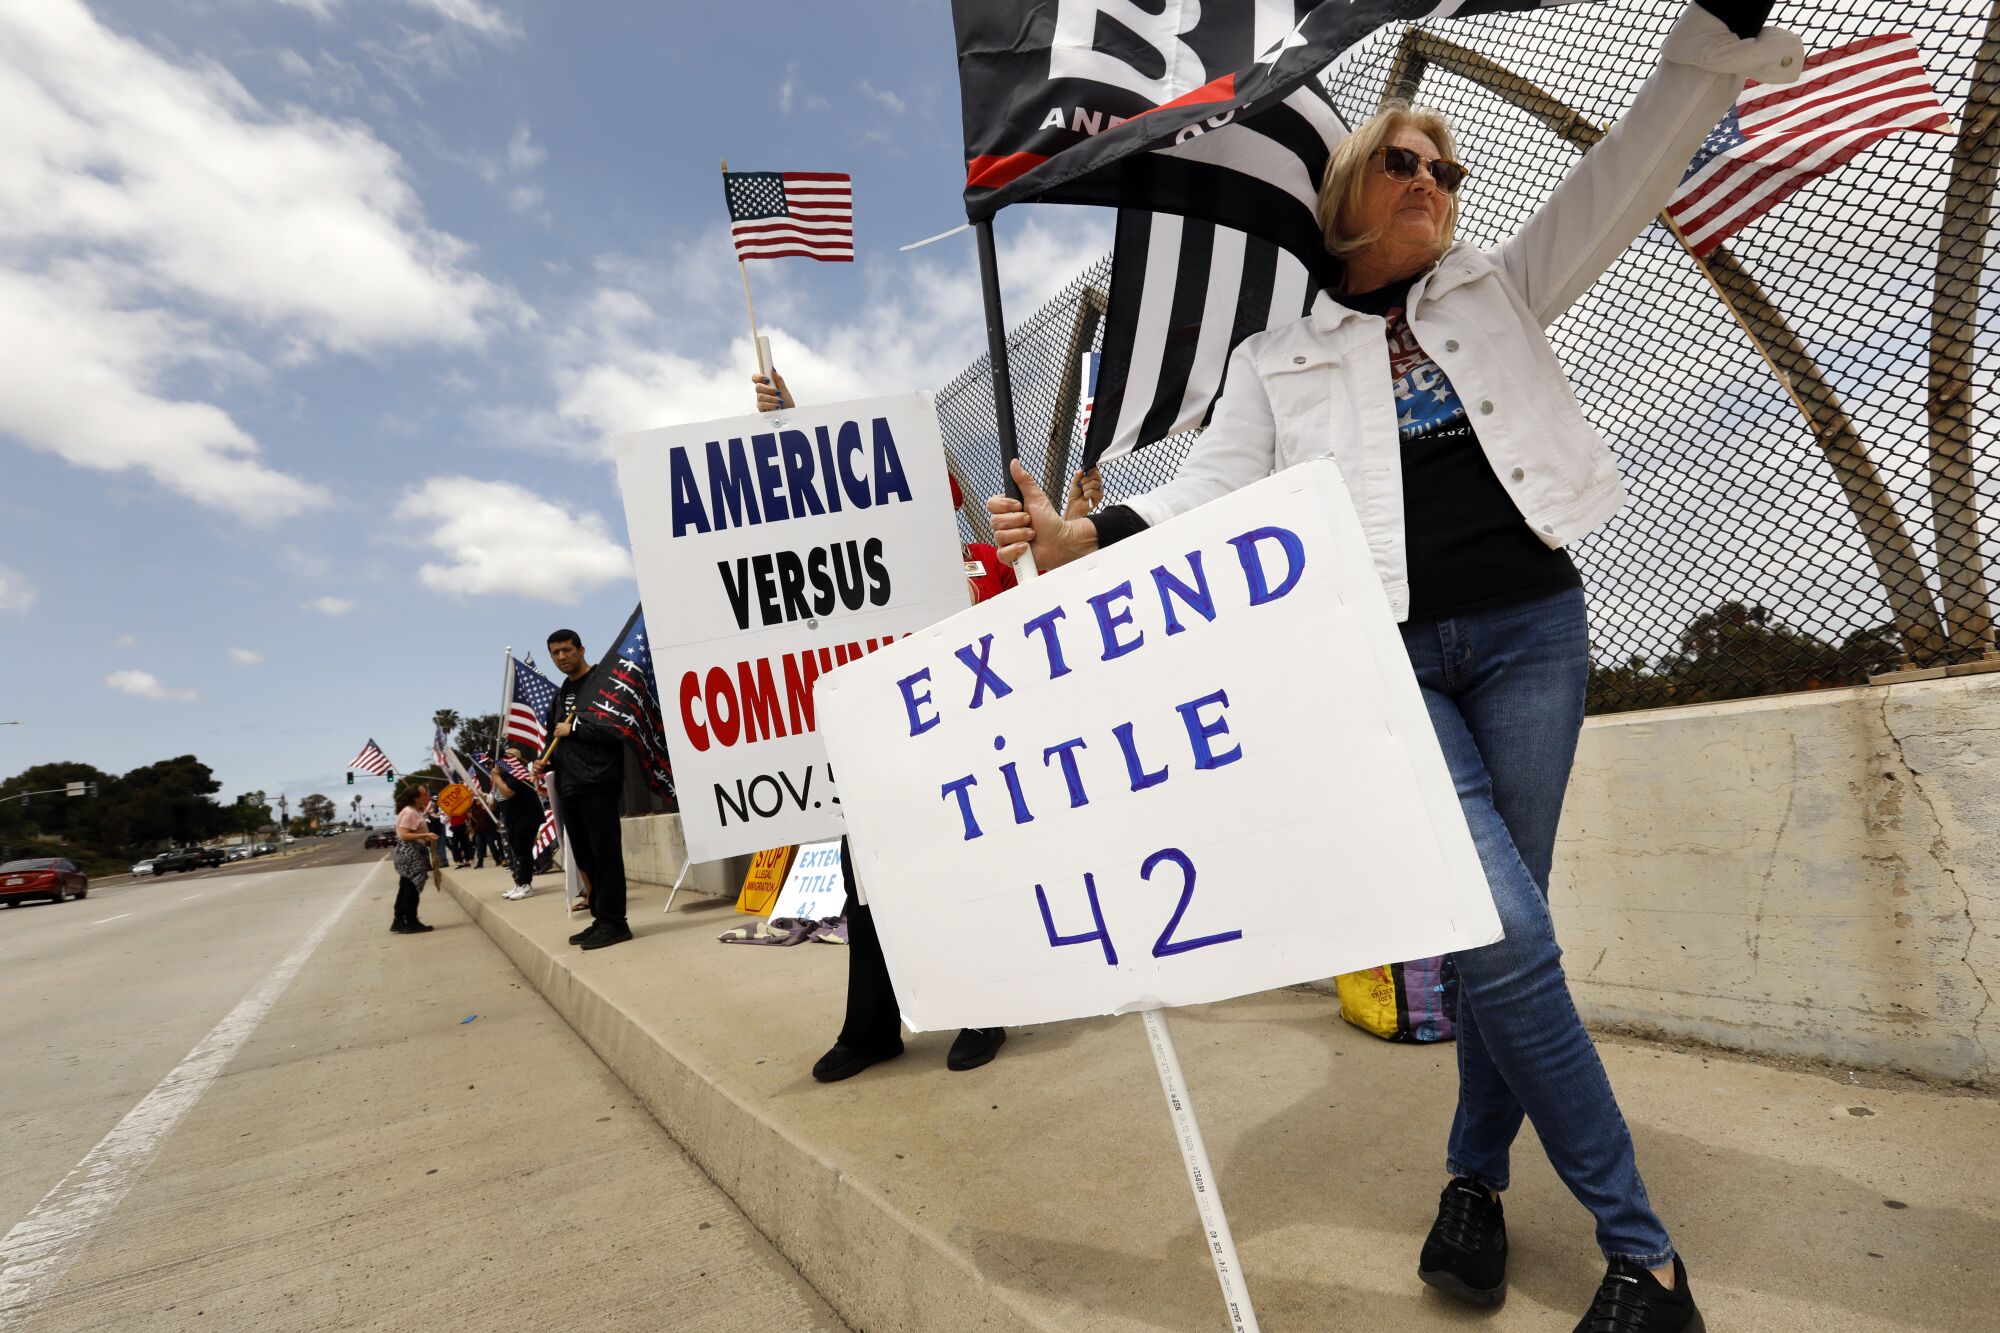 İnsanlar Kaliforniya, Chula Vista'daki bir miting sırasında Başlık 42'nin uzatılmasını destekleyen tabelalar taşıyor.